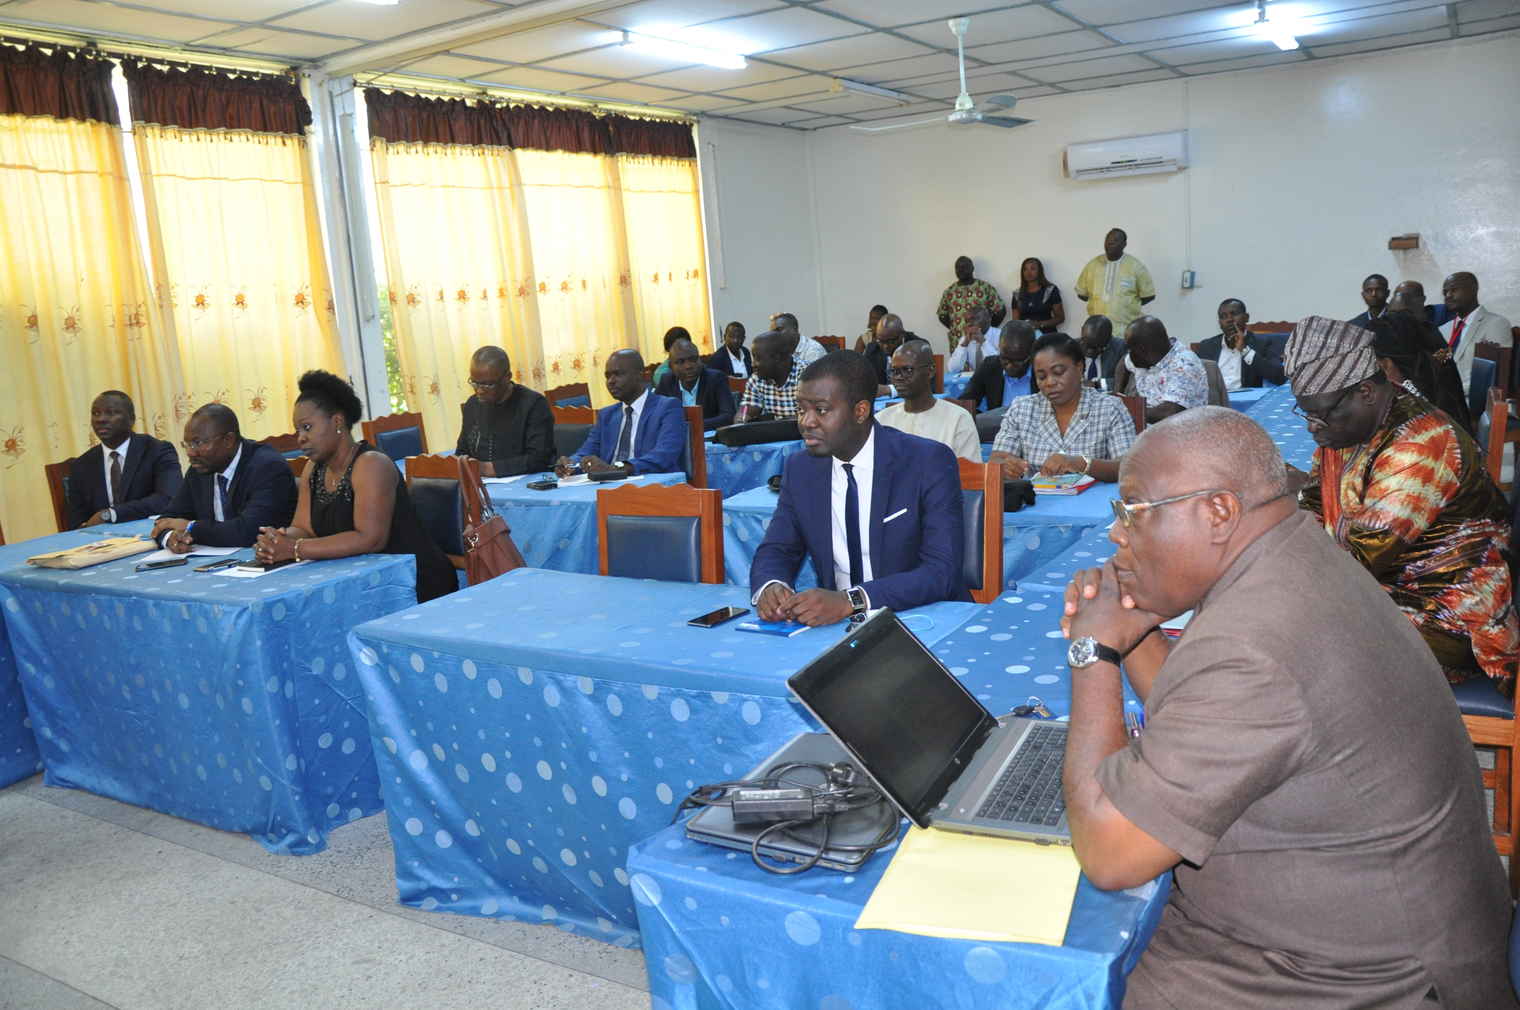 Gestion des finances publiques dans les missions diplomatiques et consulaires du Bénin: Renforcement de capacités des chefs de chancellerie à Cotonou